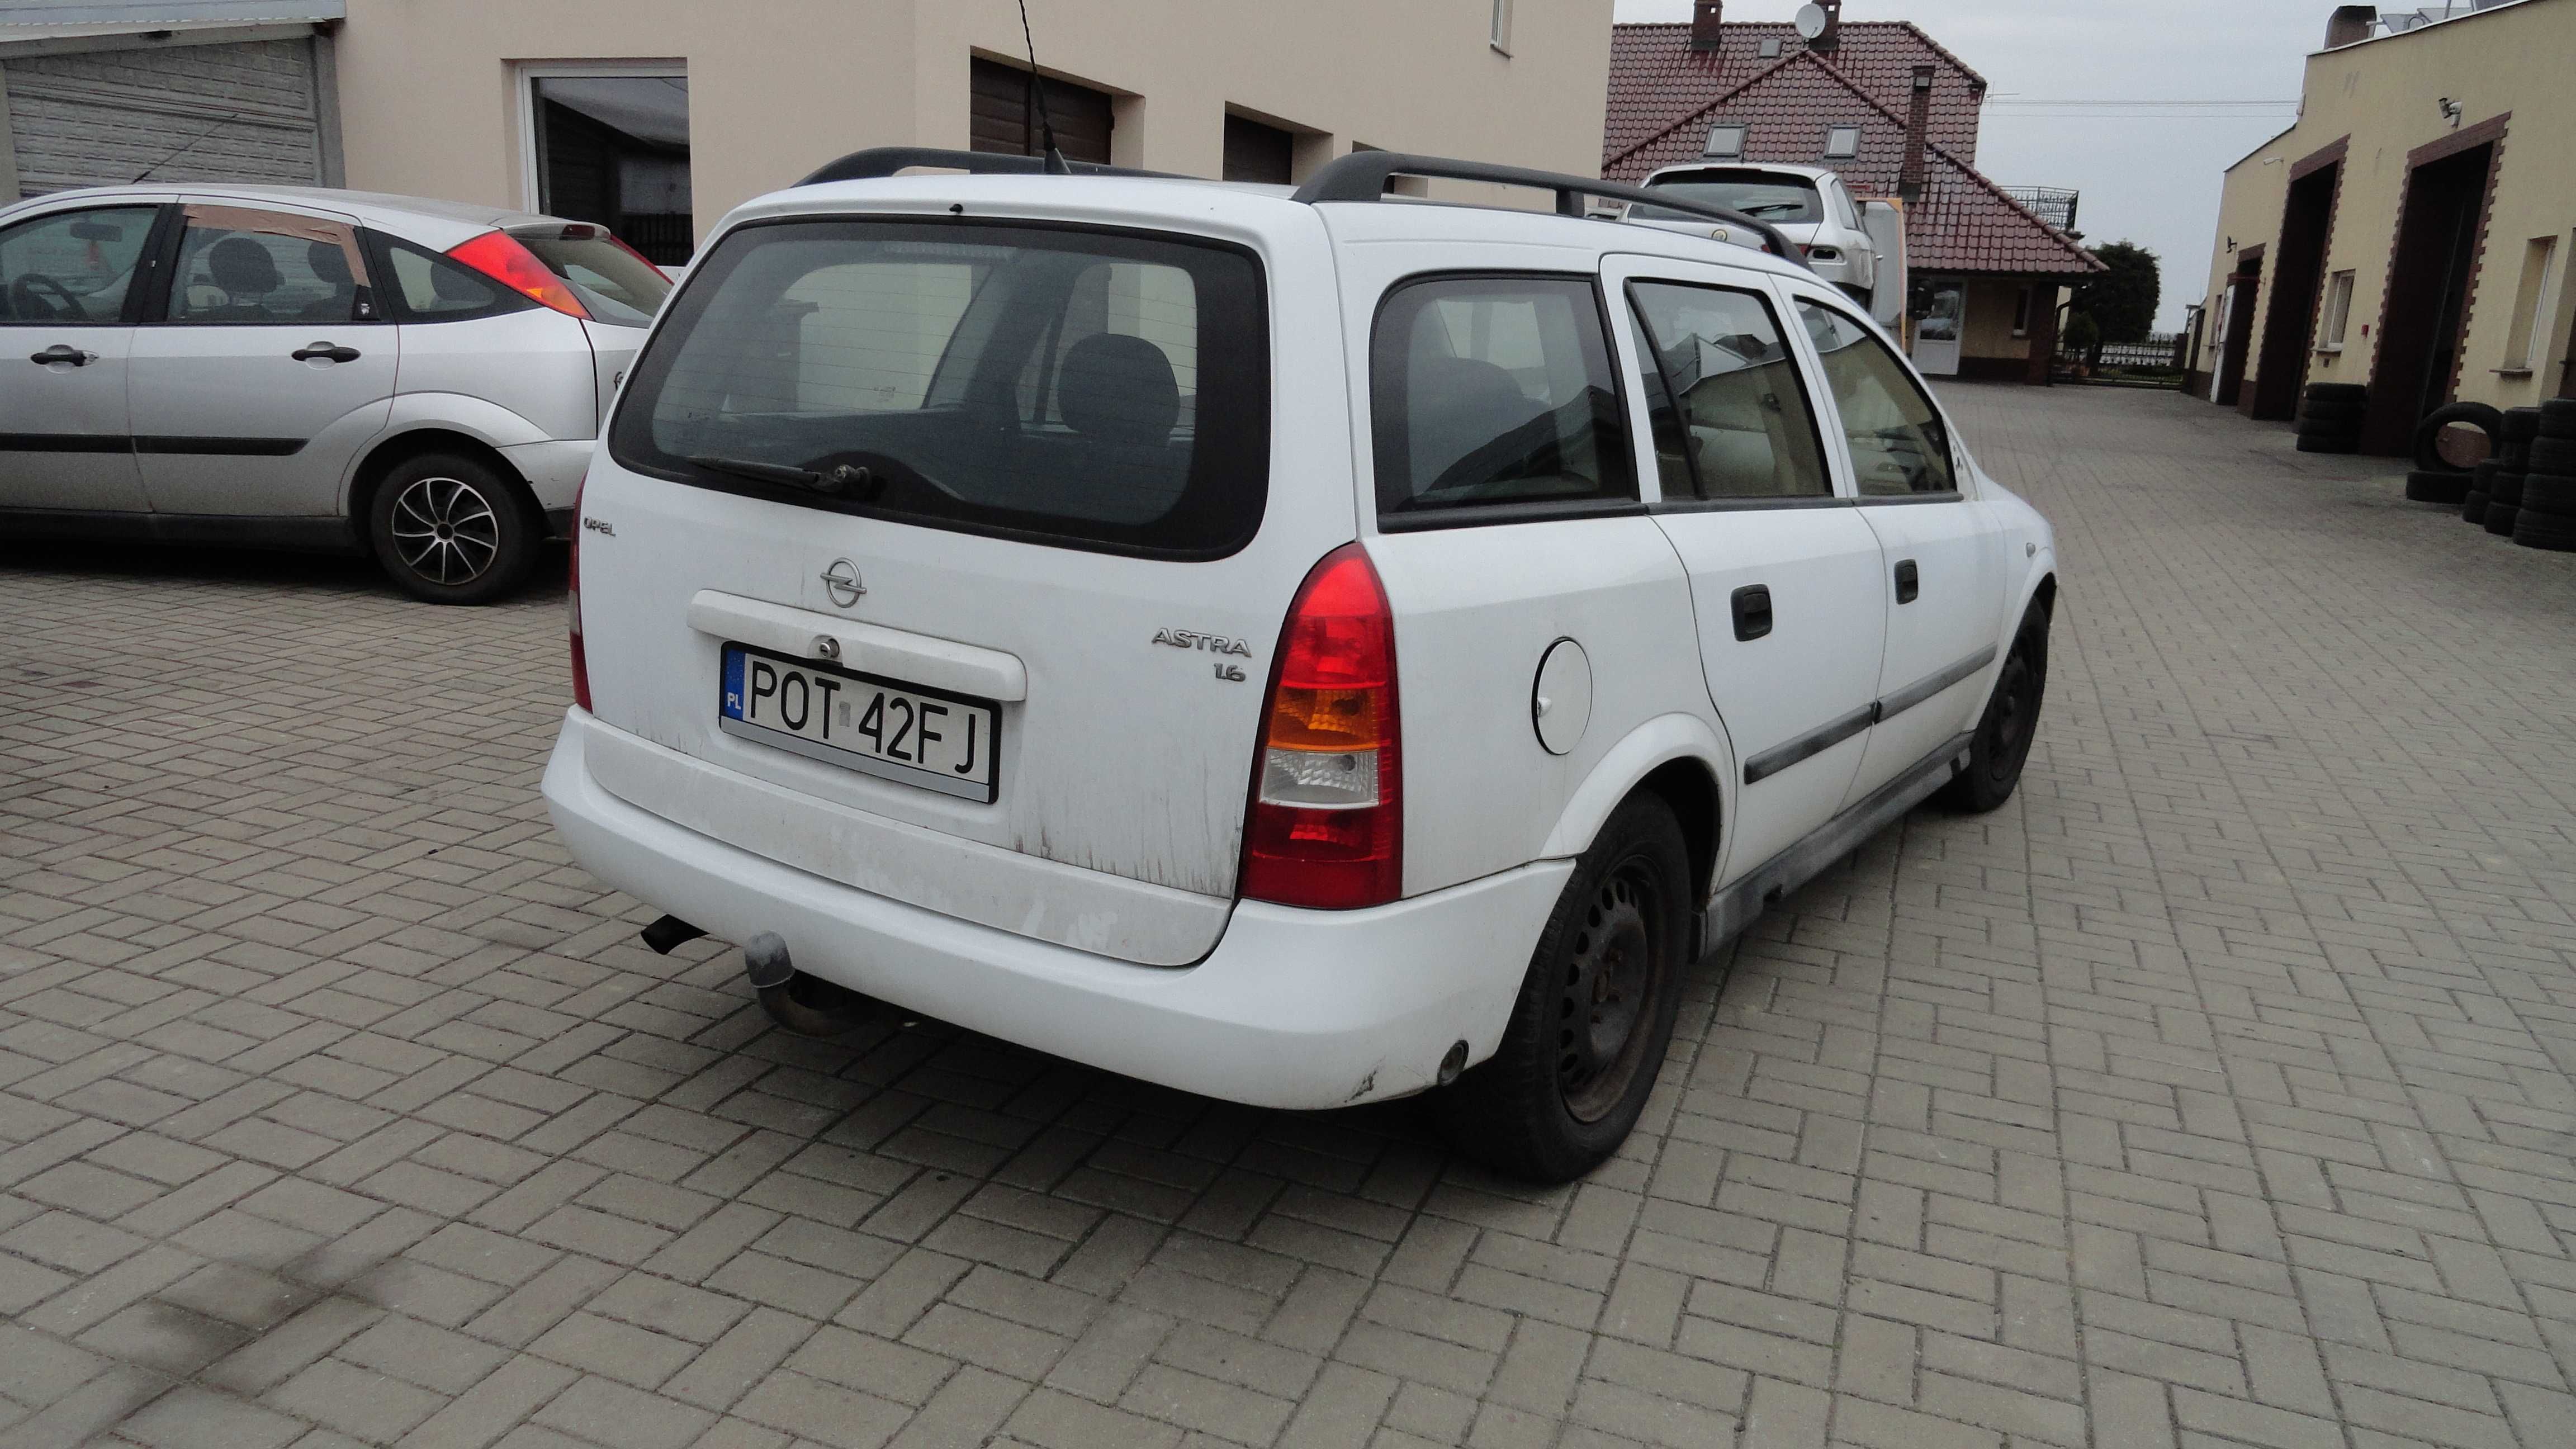 Drzwi prawe tył tylne Opel Astra kombi kolor Y474 demontaż